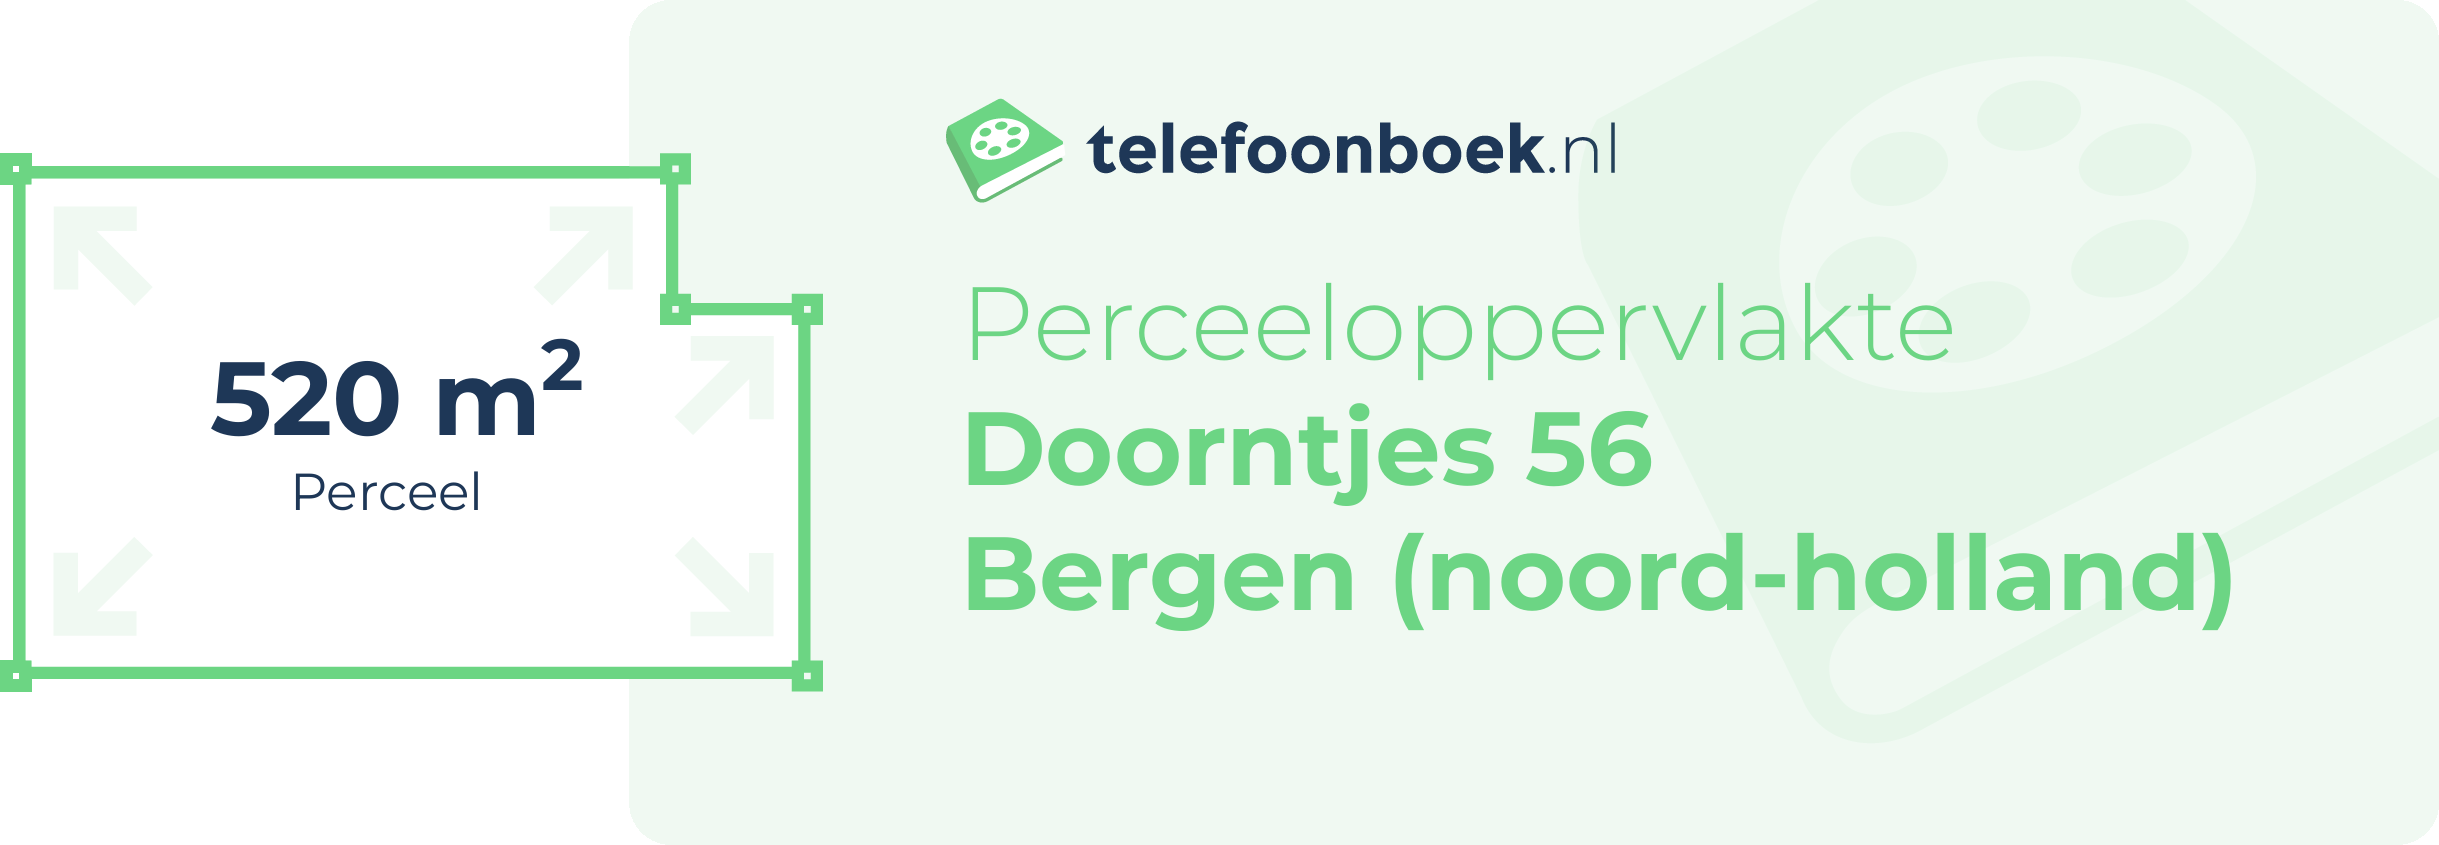 Perceeloppervlakte Doorntjes 56 Bergen (Noord-Holland)